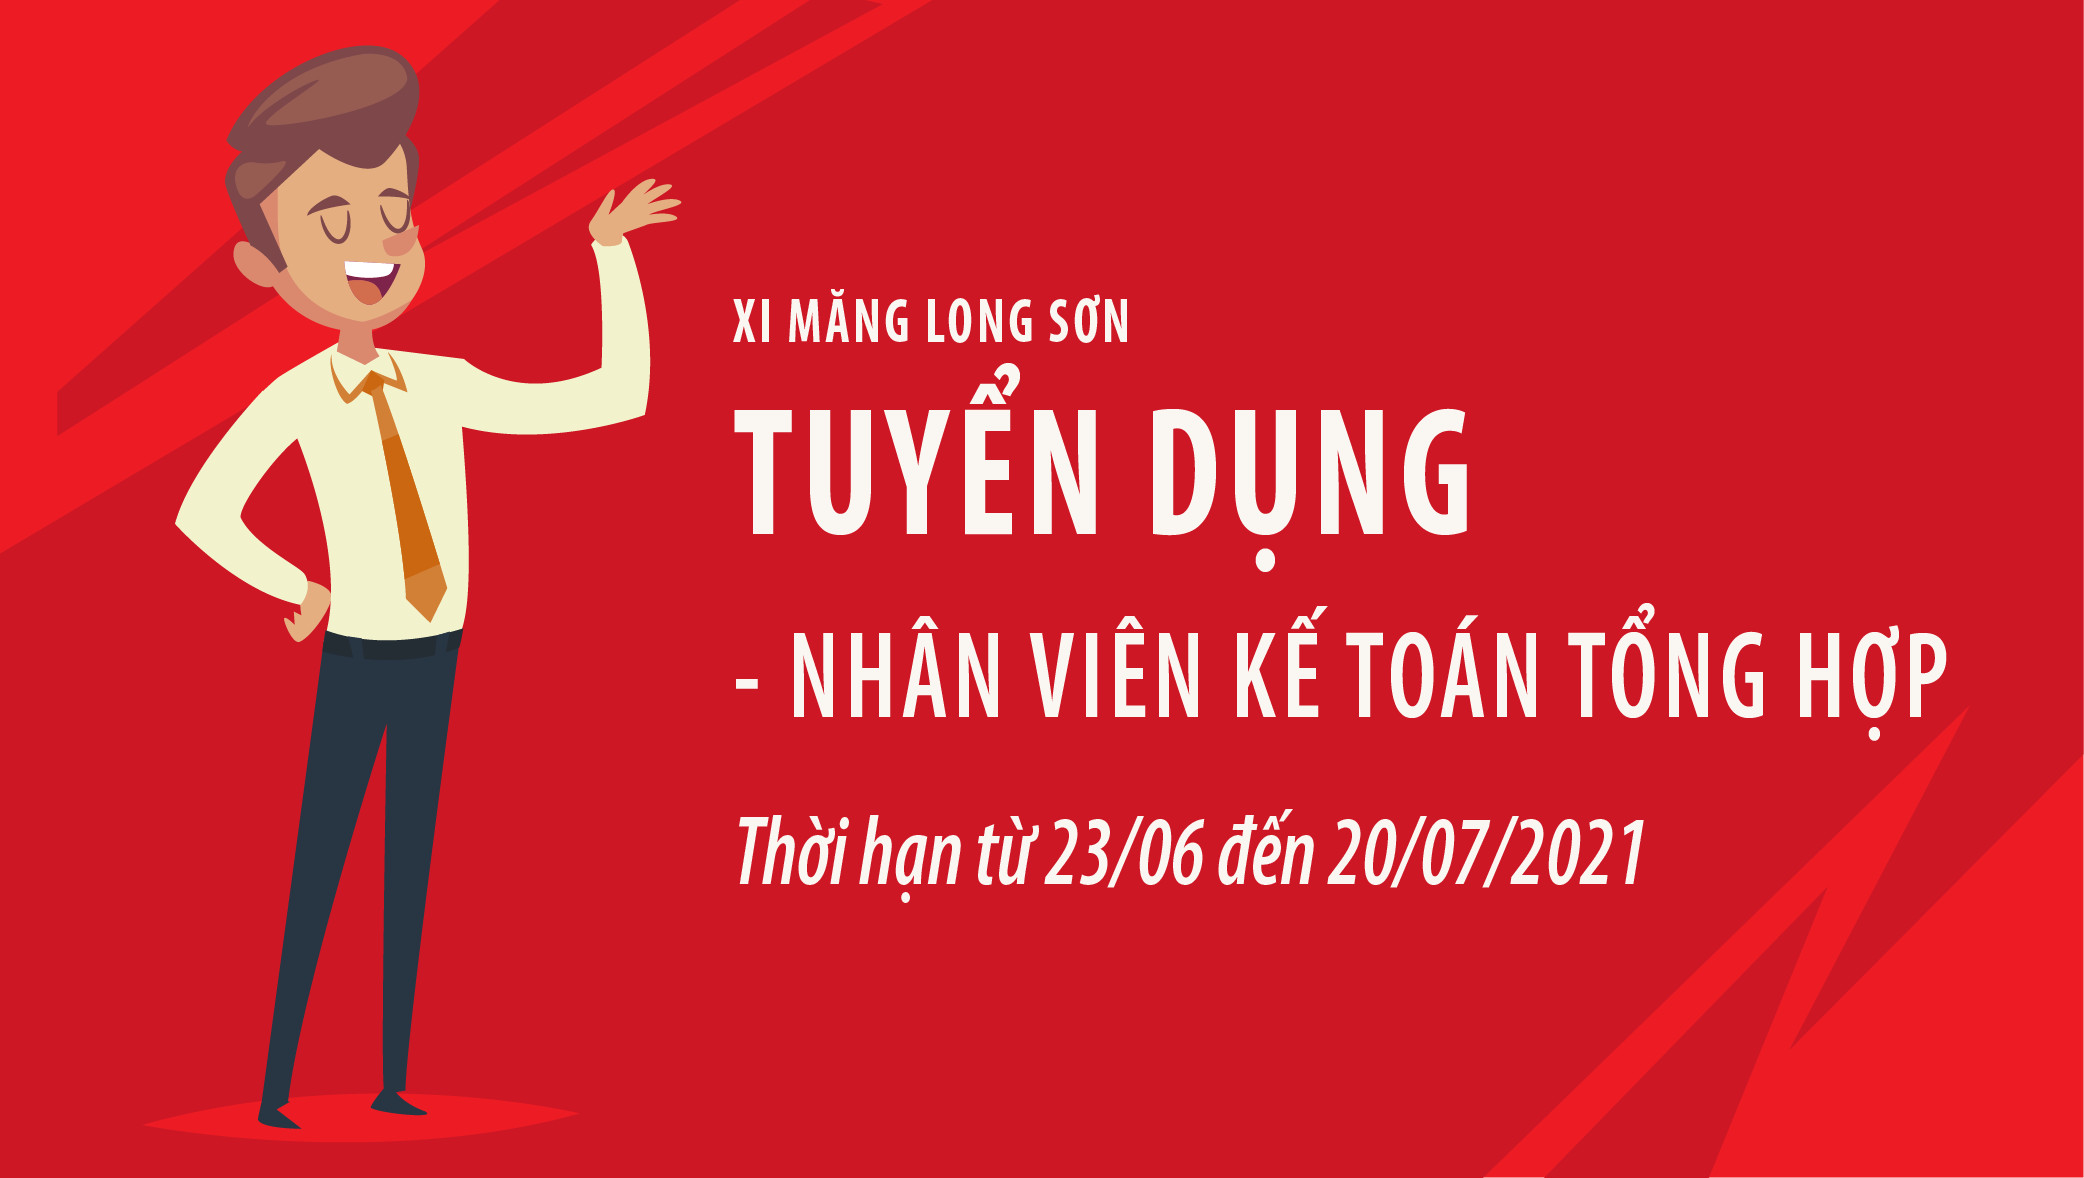 Công ty Xi măng Long Sơn – Thông báo tuyển dụng Nhân viên Kế toán.